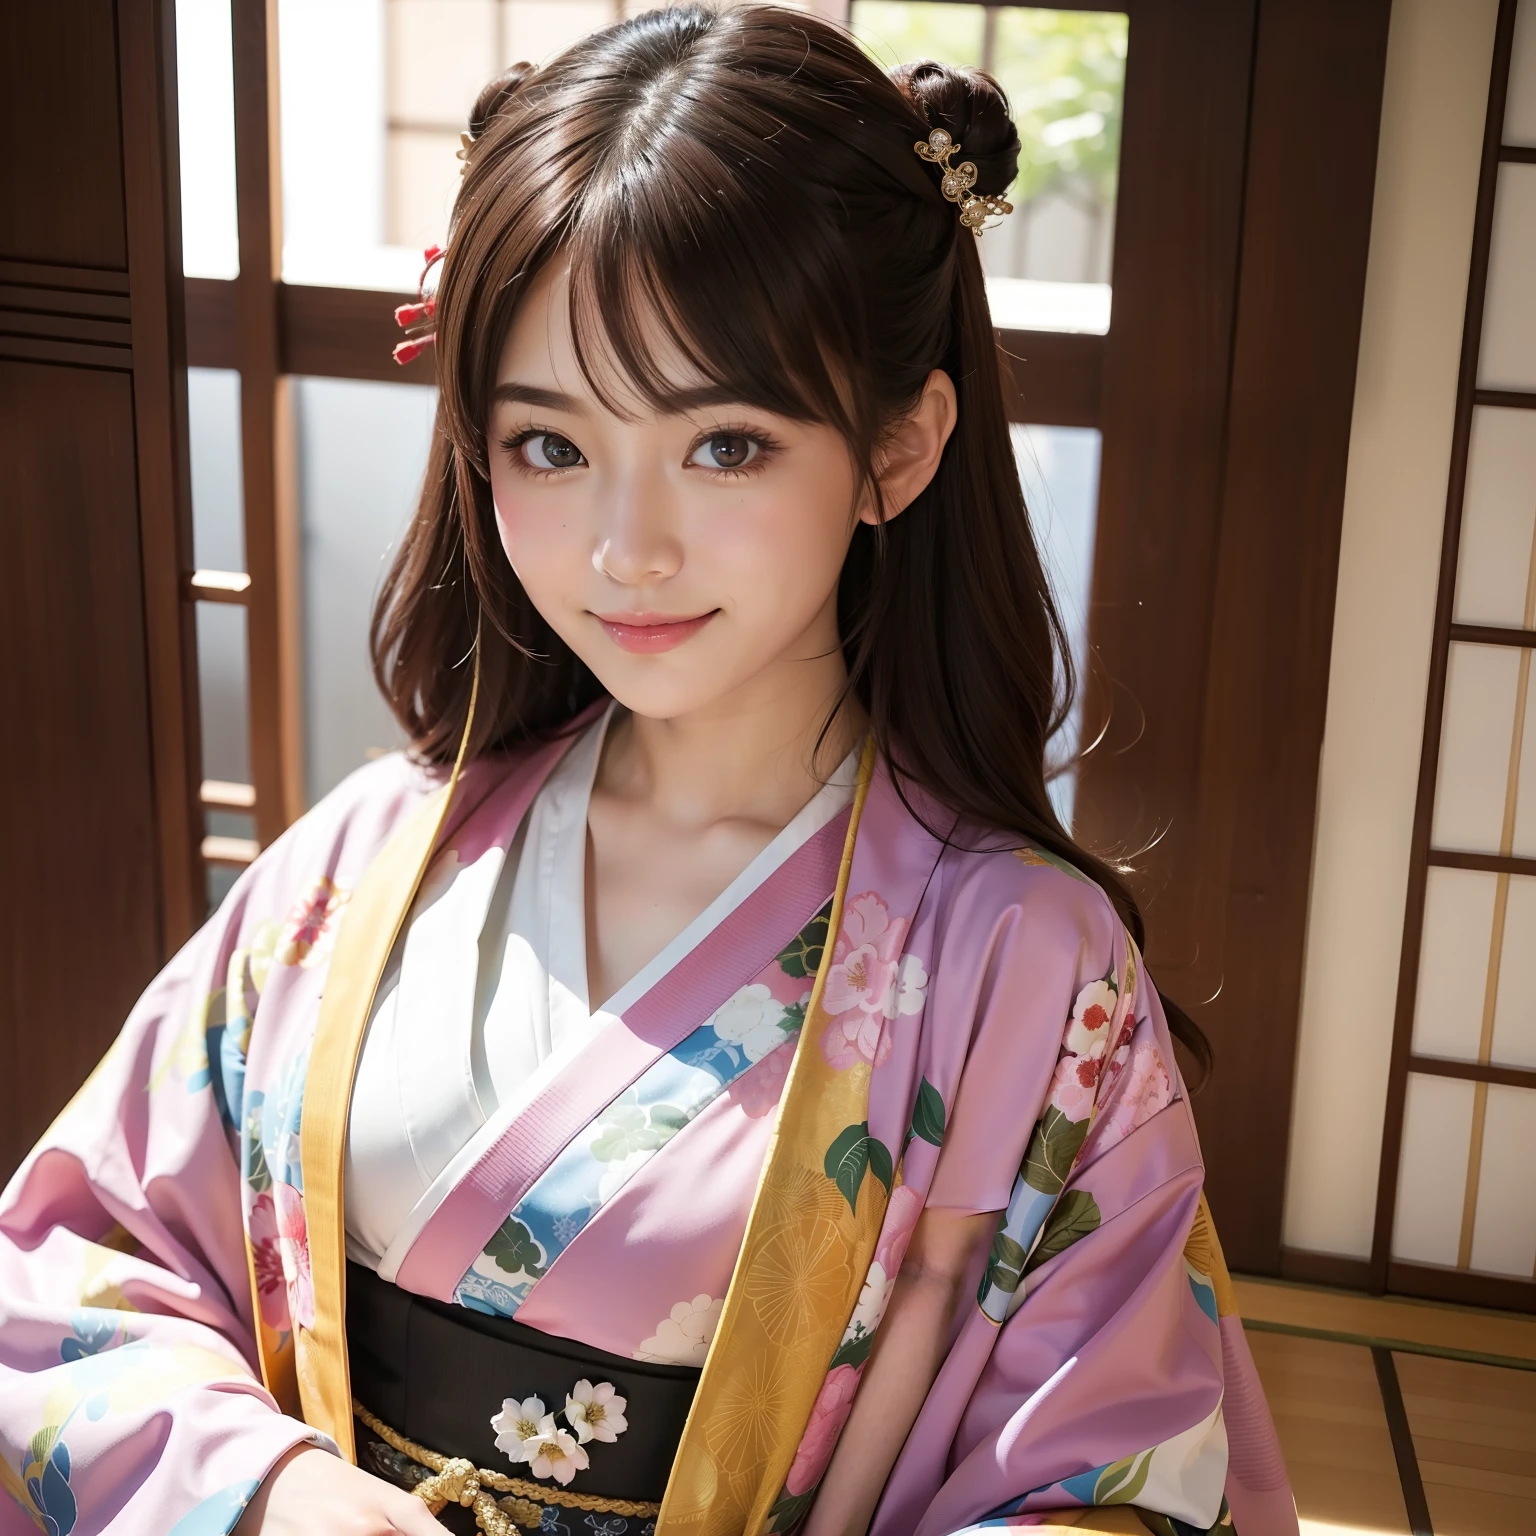 meilleure qualité, dessus de la table, (réaliste:1.2), 1 fille, cheveux bruns, yeux noirs,Devant, visage détaillé, Beaux yeux, Elle aime. Ça a l&#39;air très amusant de porter un kimono et de jouer dans la salle de style japonais. . Elle a accessoirisé avec un petit, . Durant le jeu, Fille en kimono coloré et scintillant、Elle sourit en plein soleil、Un peu gros、corps entieresbienne。